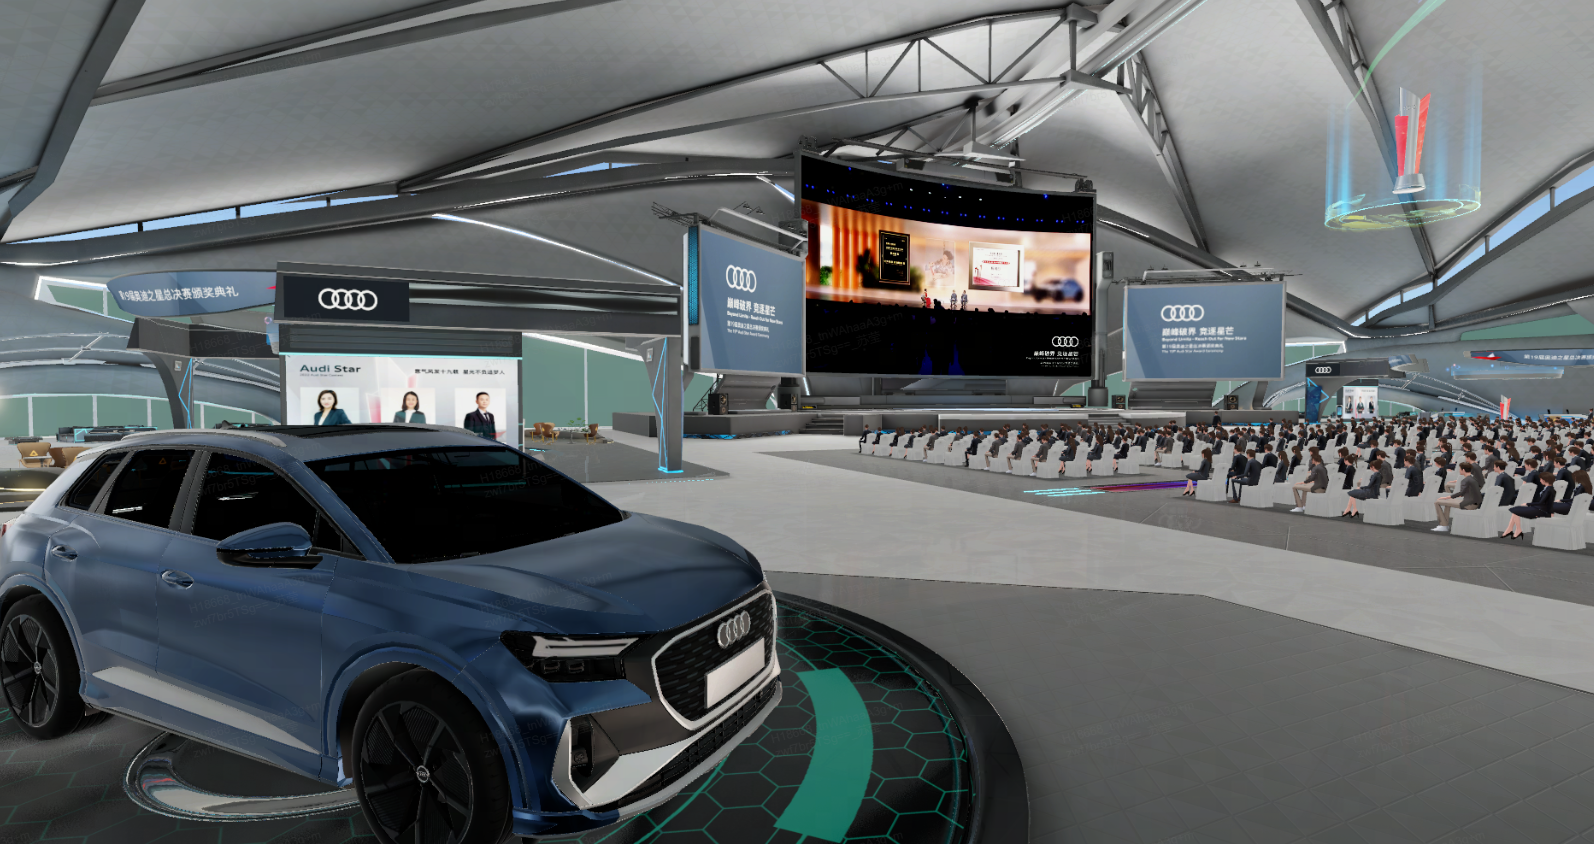 这是一张展示奥迪汽车的展览会场景图片，有现代感的室内设计，观众席，大屏幕以及一辆蓝色奥迪车。